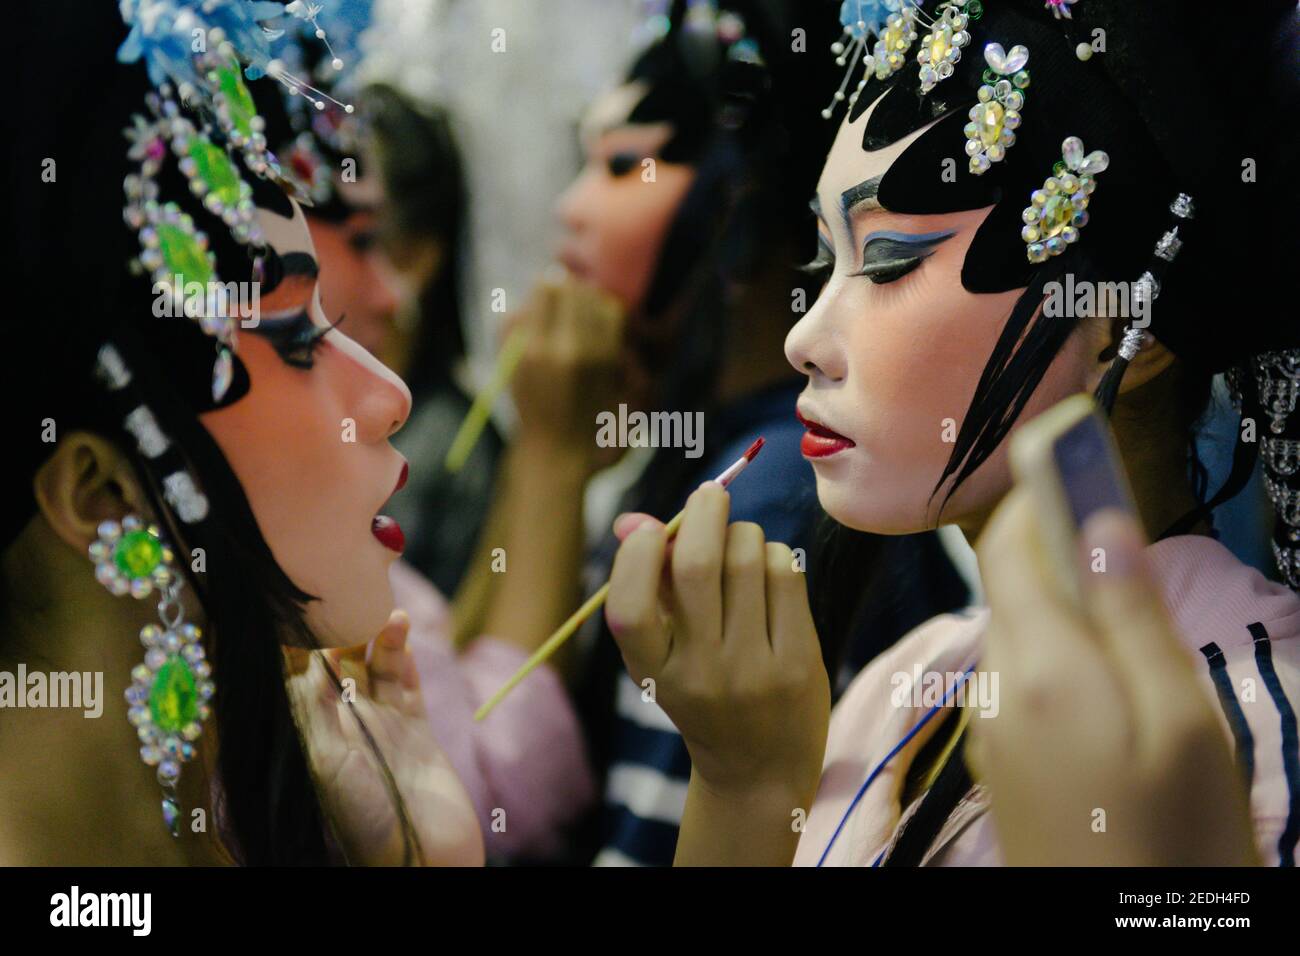 Un profilo closeup di una giovane bella operista cinese in un magnifico costume da fata, mentre la sua amica spazzolando le labbra con un pennello rossetto. Foto Stock